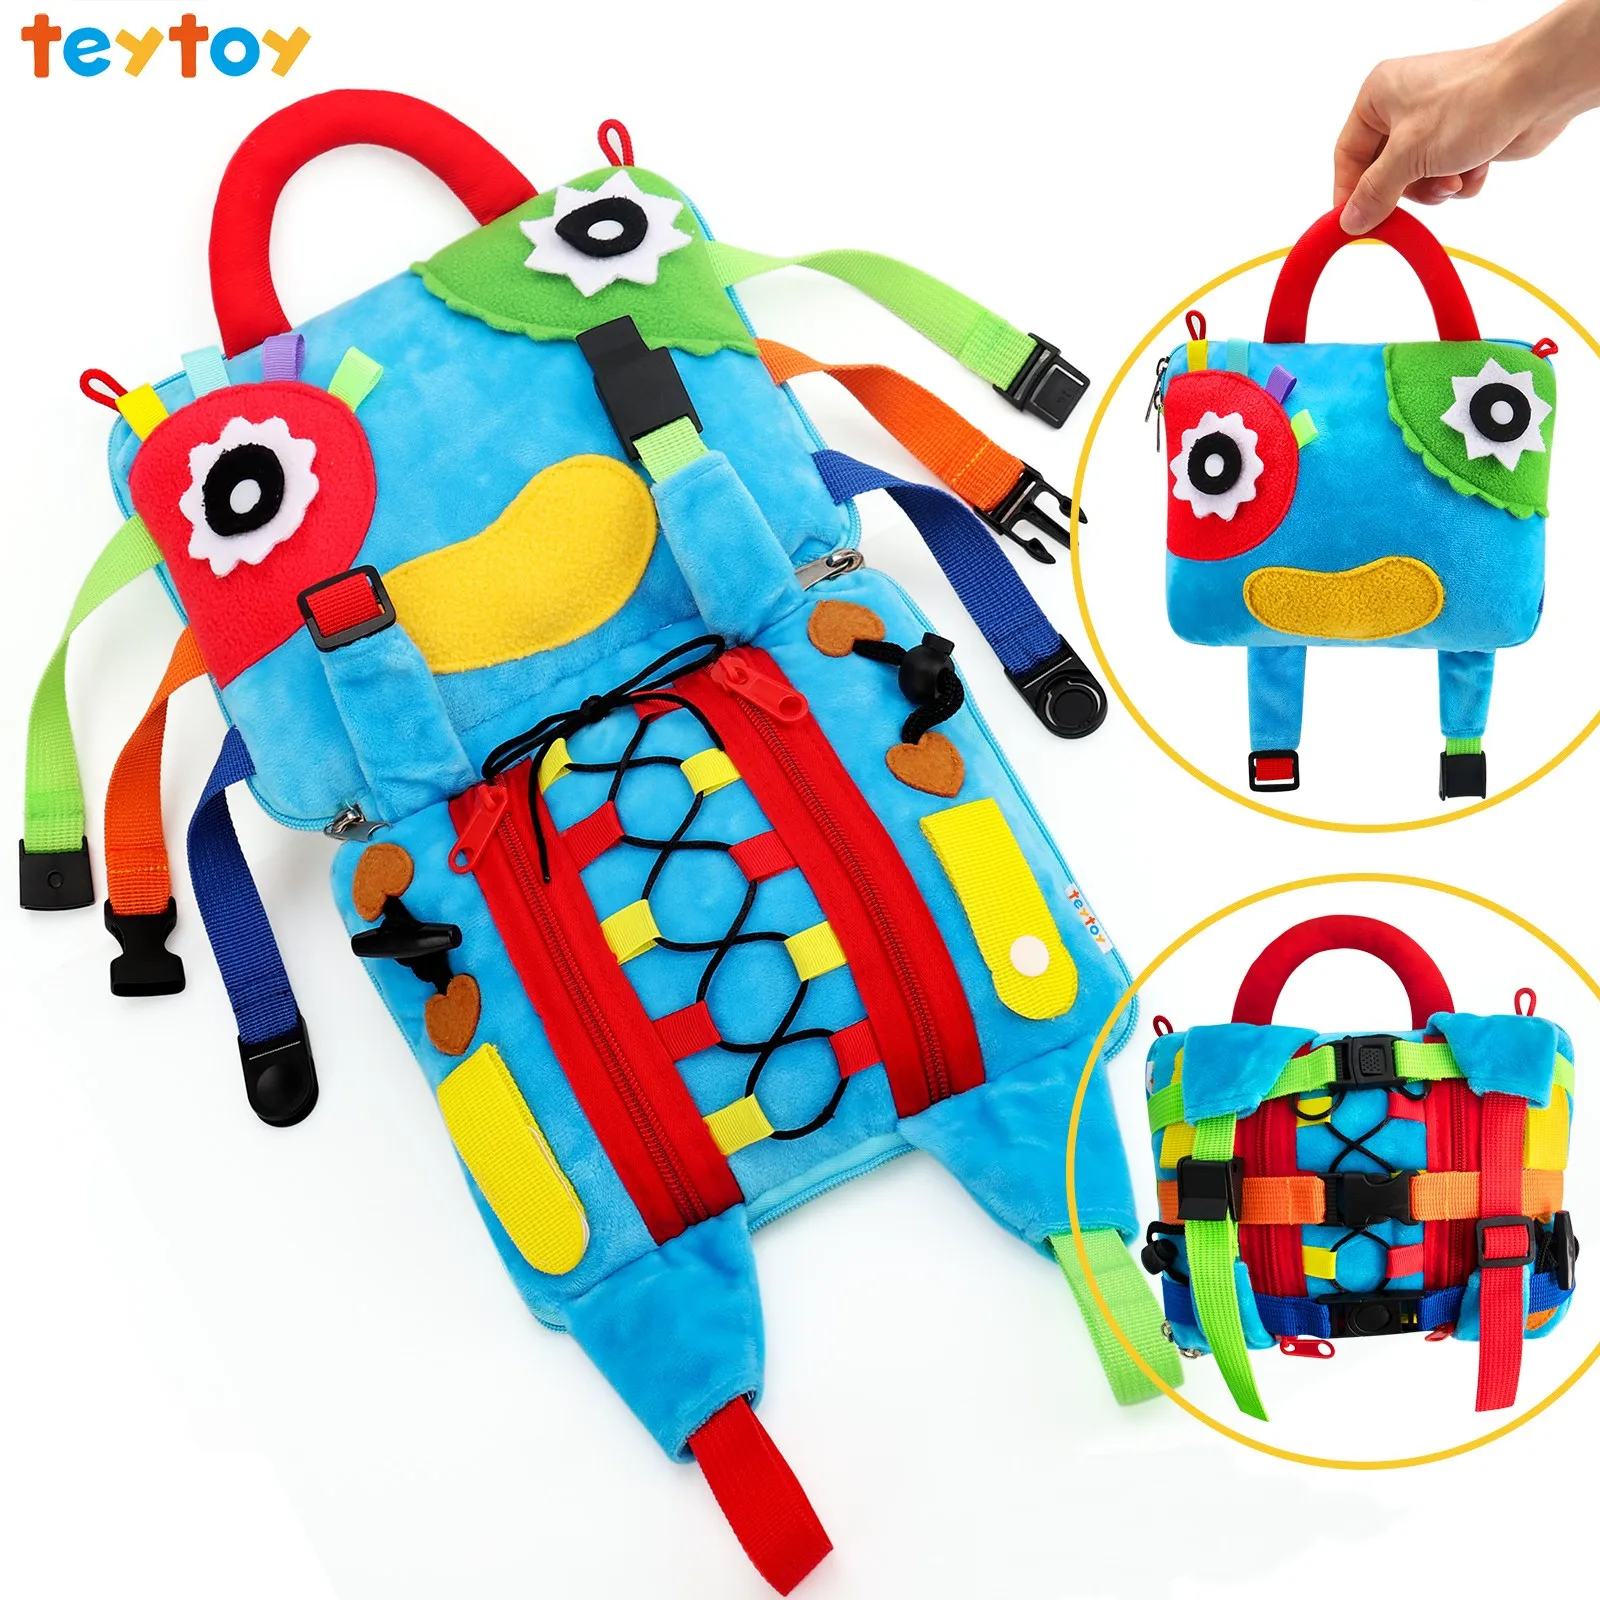 Juguete del niño teytoy placa ocupado juguetes de aprendizaje educativo para niños pequeños aprender 